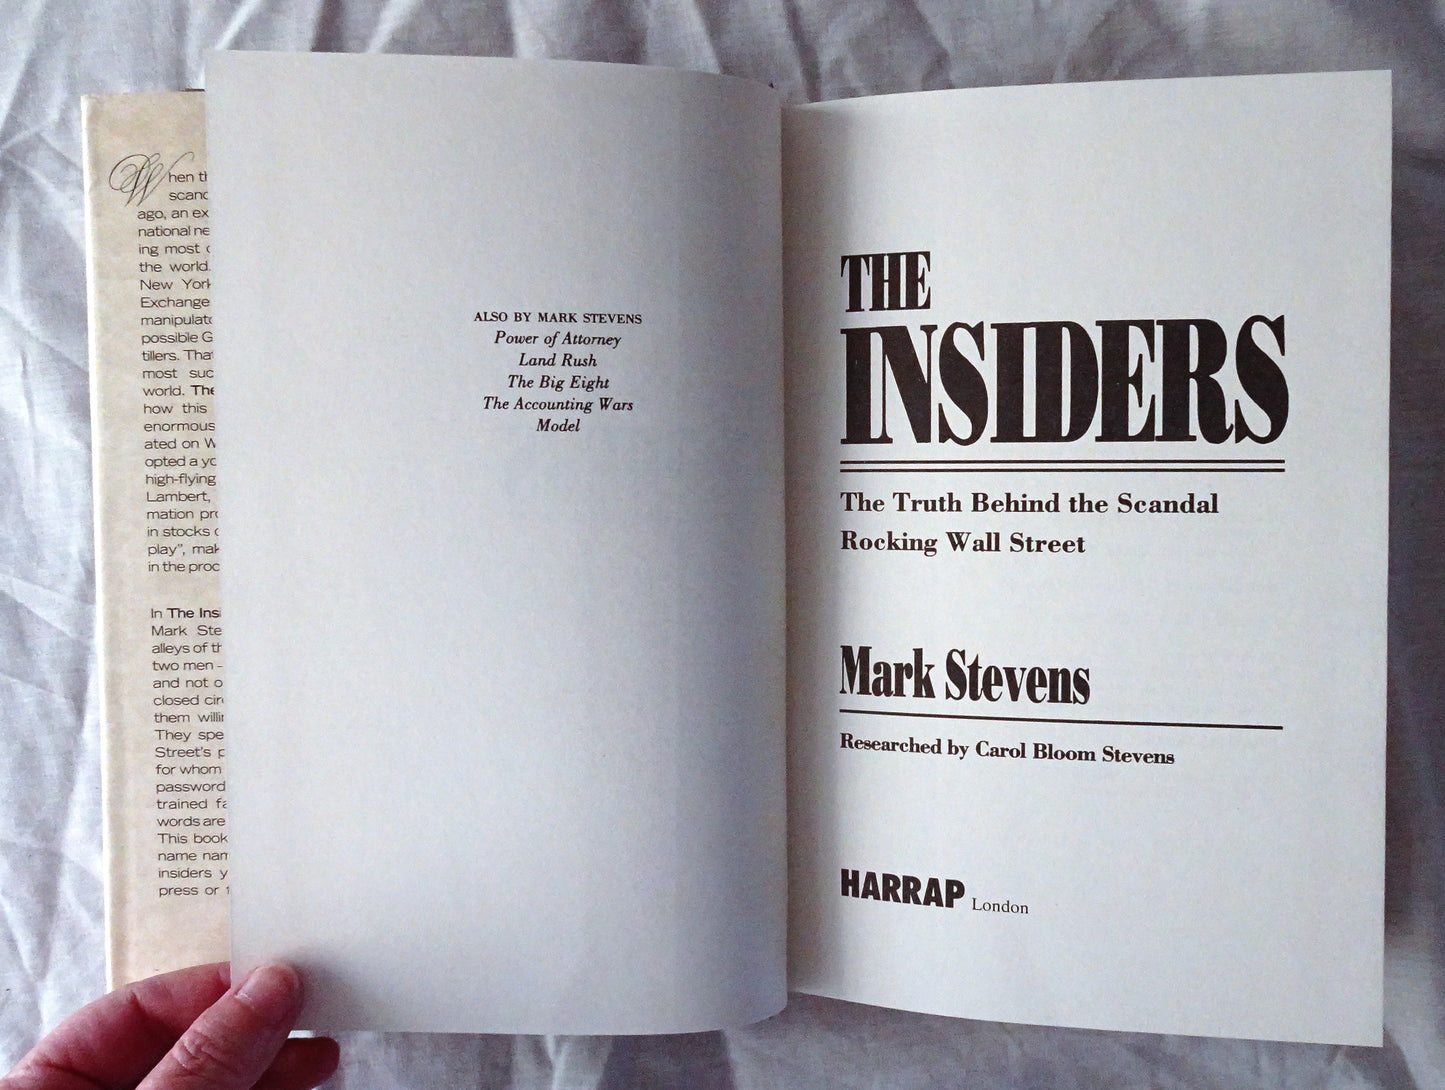 The Insiders by Mark Stevens